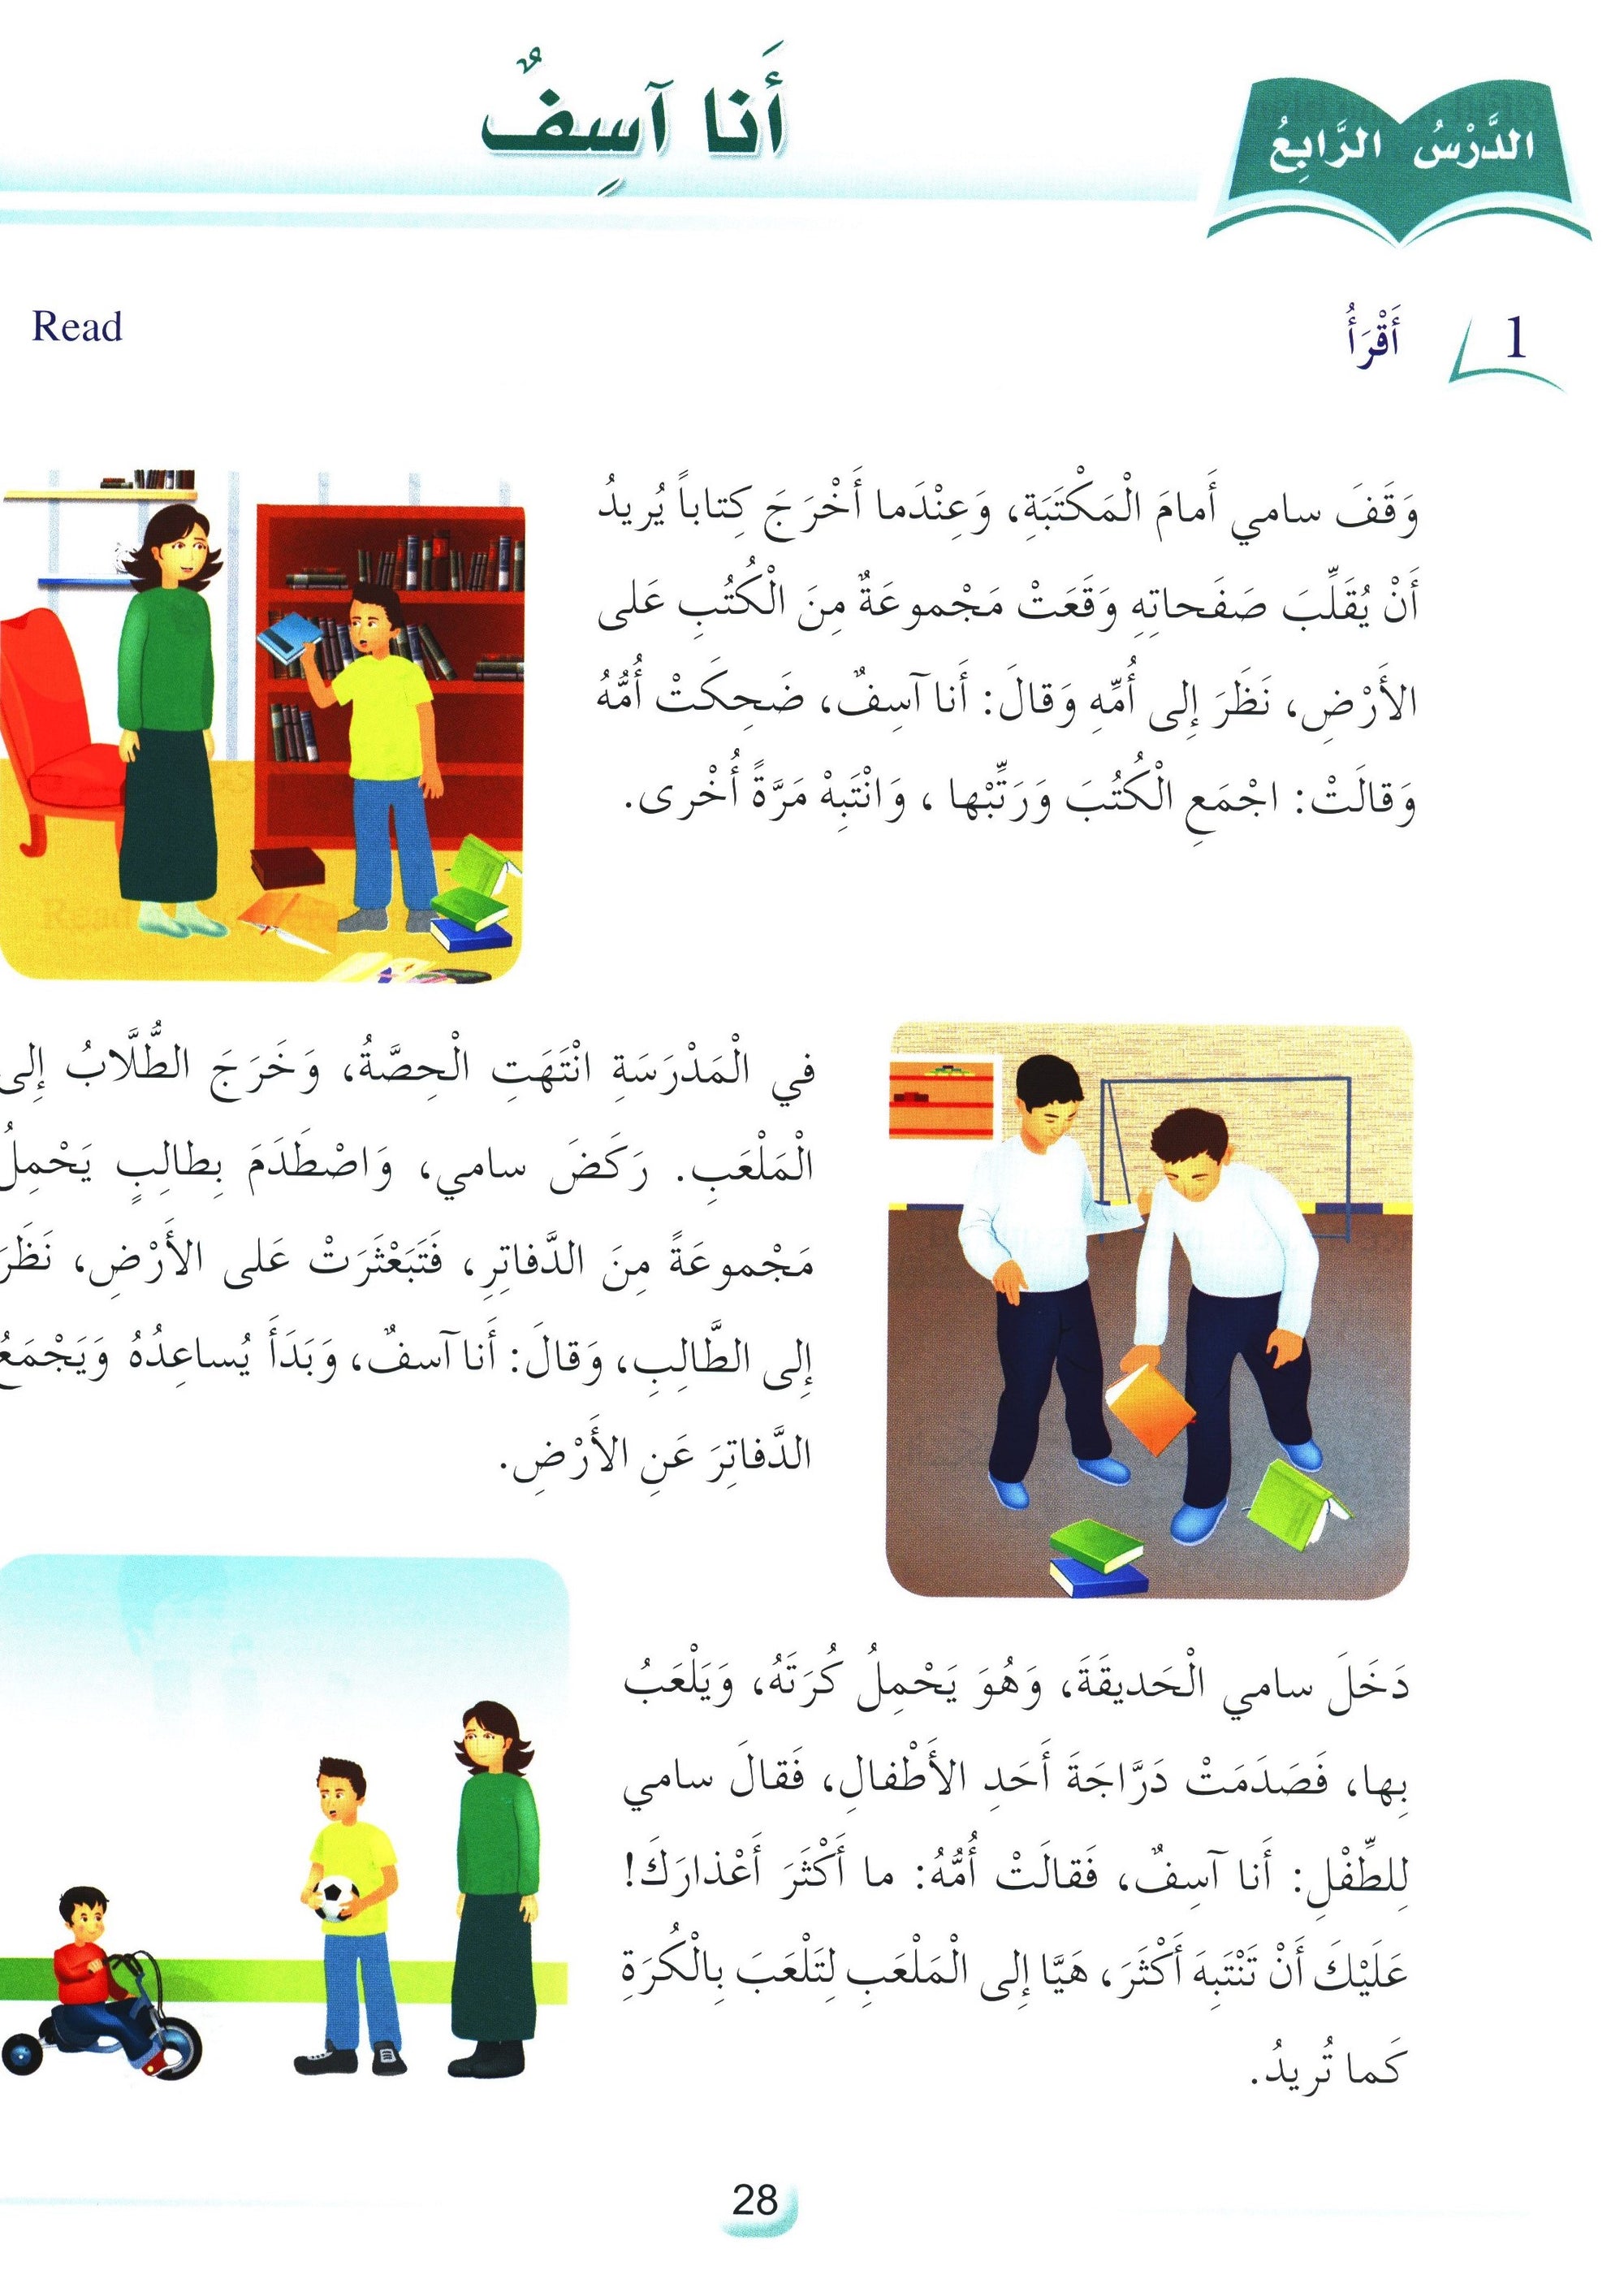 Arabic Friends Textbook Level 3 أصدقاء العربية كتاب الطالب